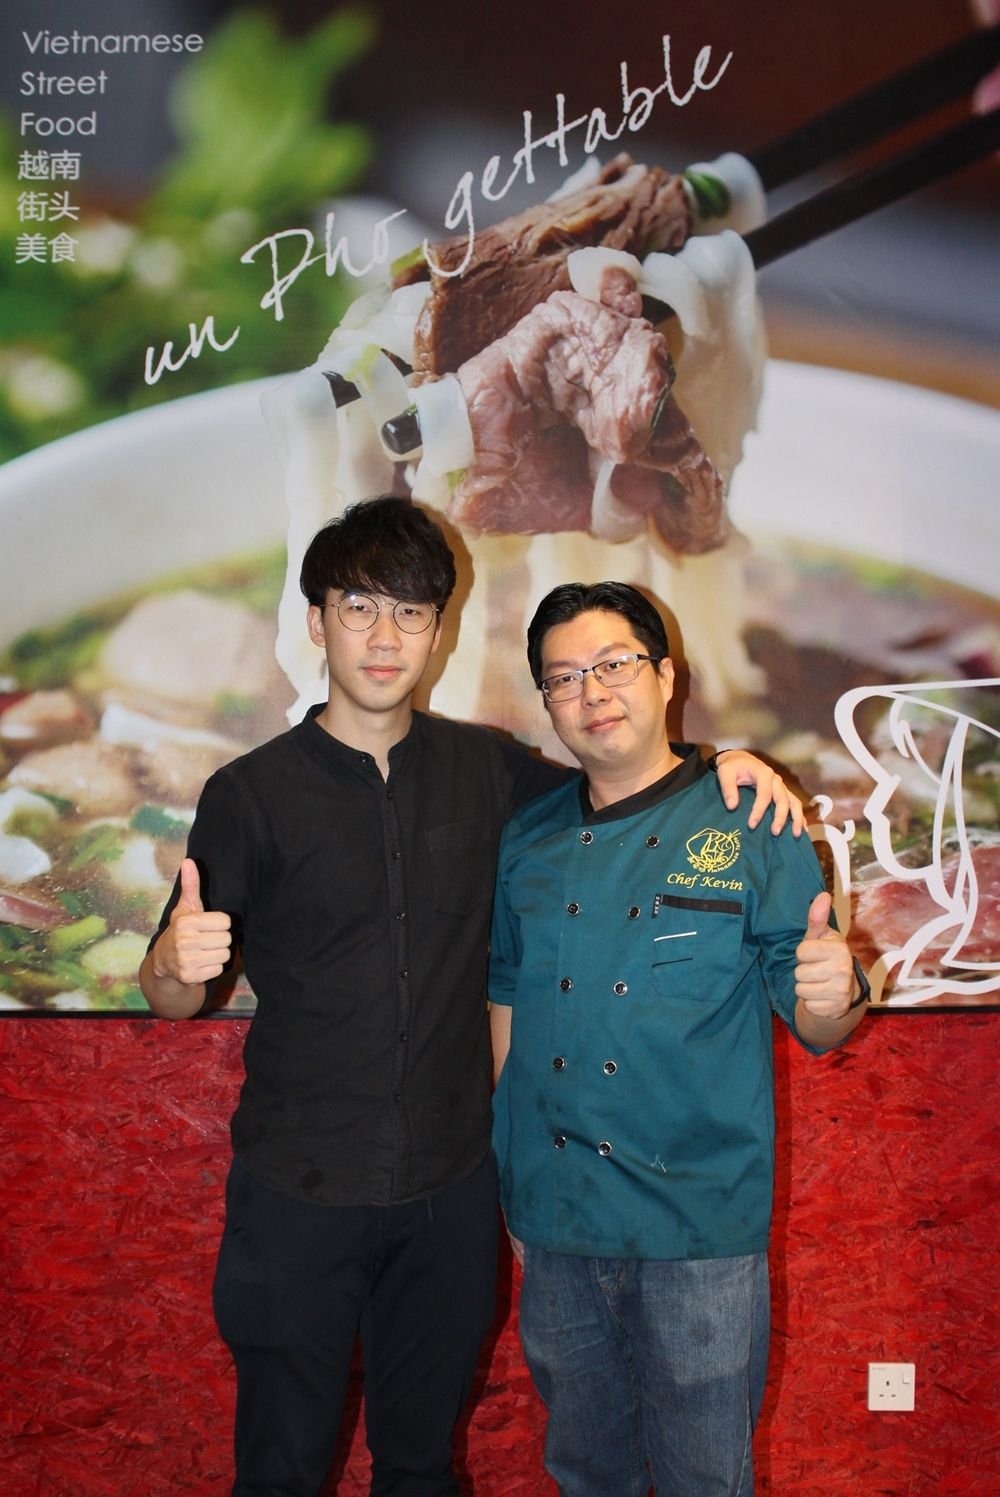 谢佑俊（左起）与苏浩翔一拍即合，联手创办“越南味”餐馆，并放眼两年内开始7家分店。